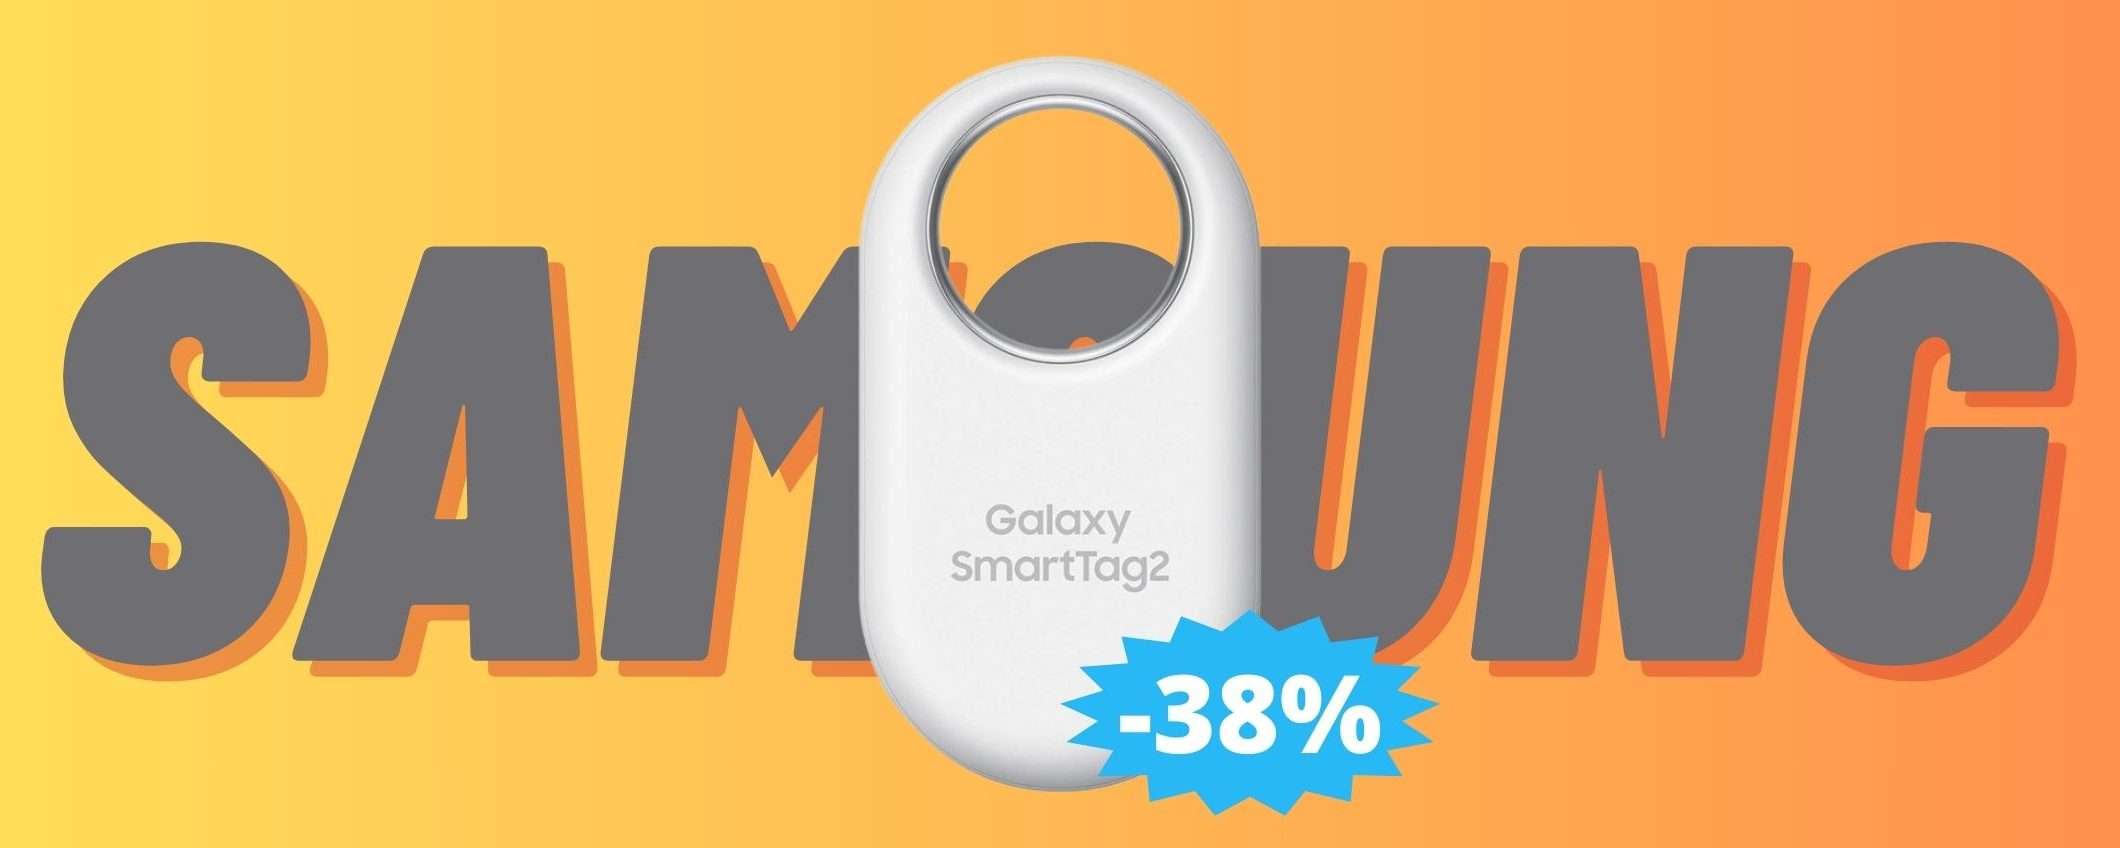 Samsung Galaxy SmartTag2: sconto EPICO del 38% su Amazon